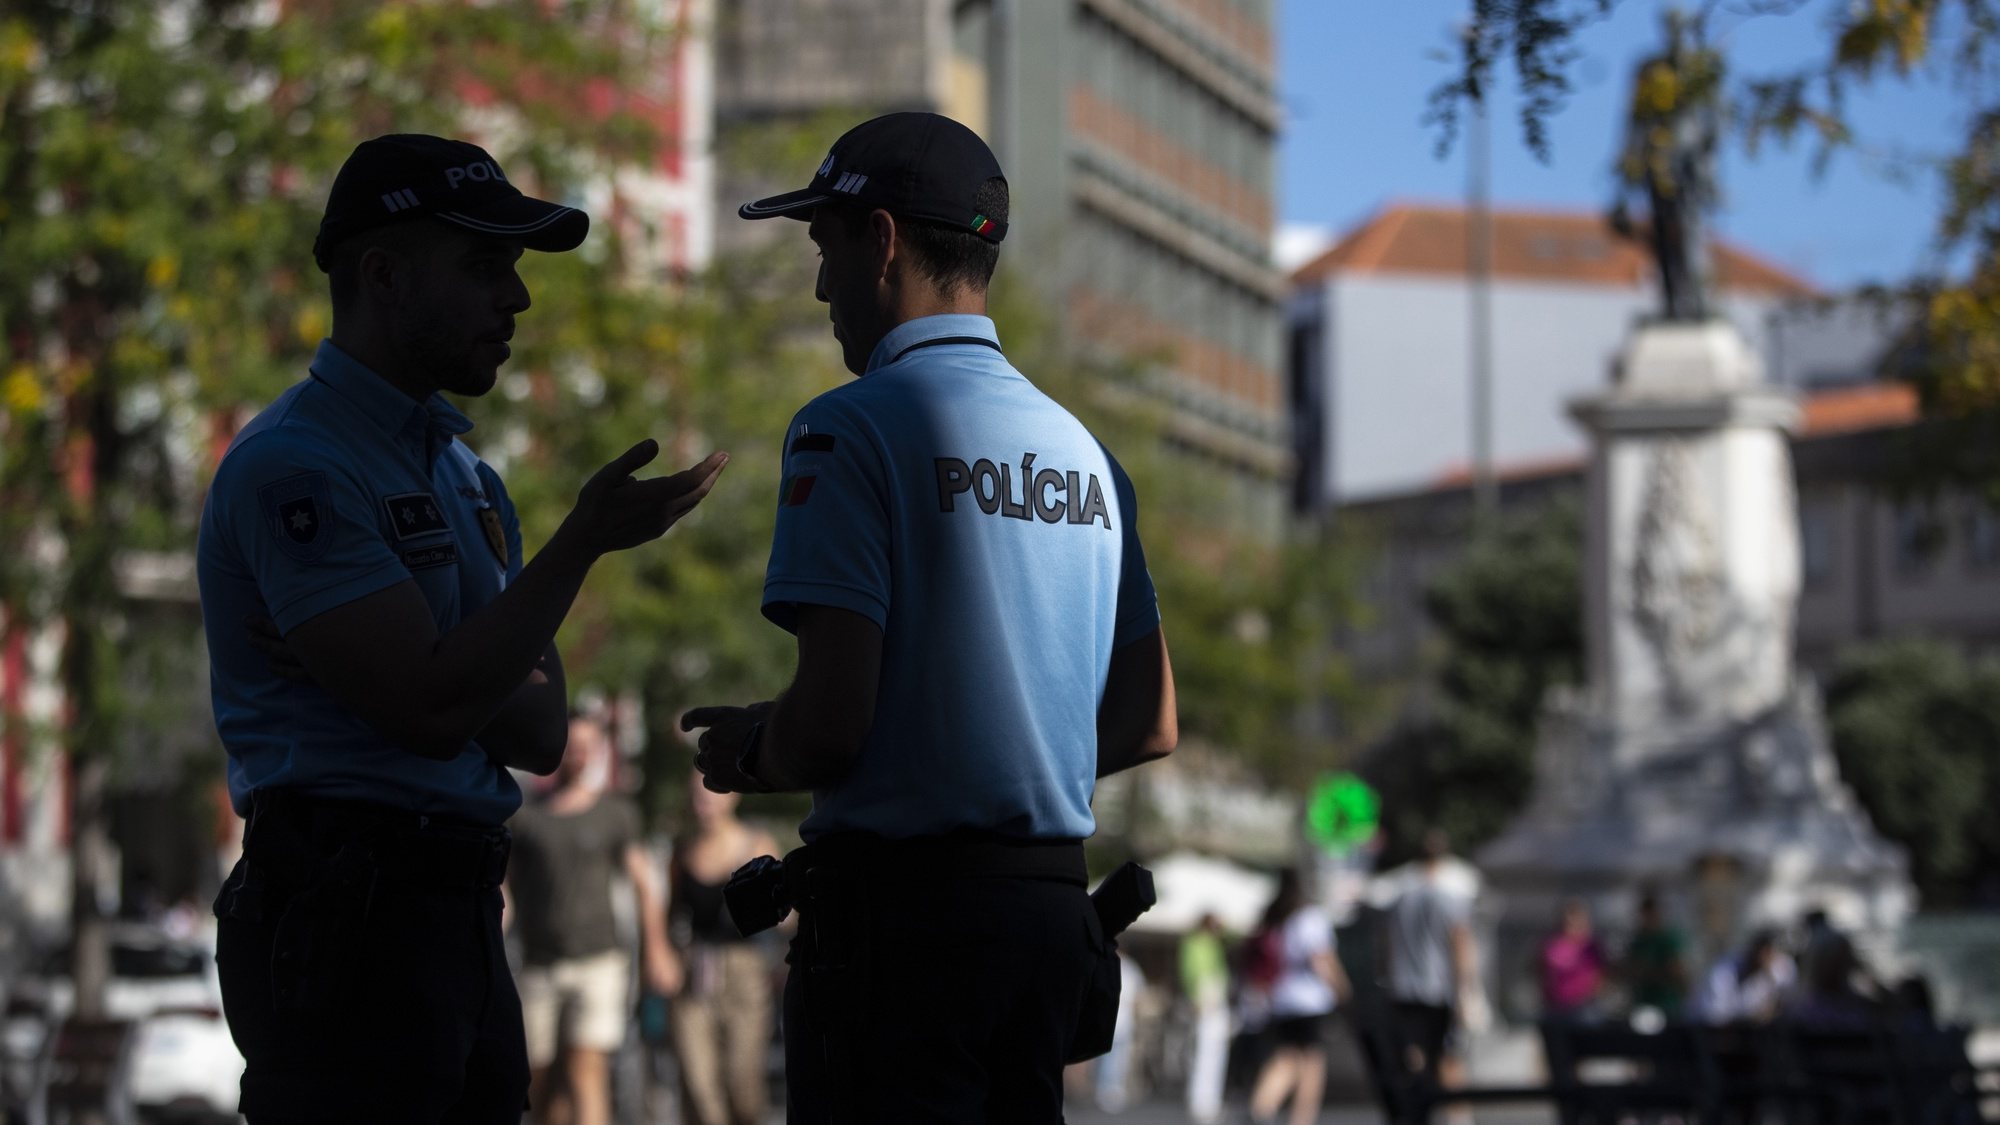 Elementos da Polícia de Segurança Pública (PSP) durante a apresentação das Unidades Móveis de Atendimento da PSP, na Praça da Batalha, no Porto, 28 de julho de 2022. As unidades móveis de atendimento, foram apresentadas hoje, simultaneamente em Lisboa e no Porto. JOSÉ COELHO/LUSA